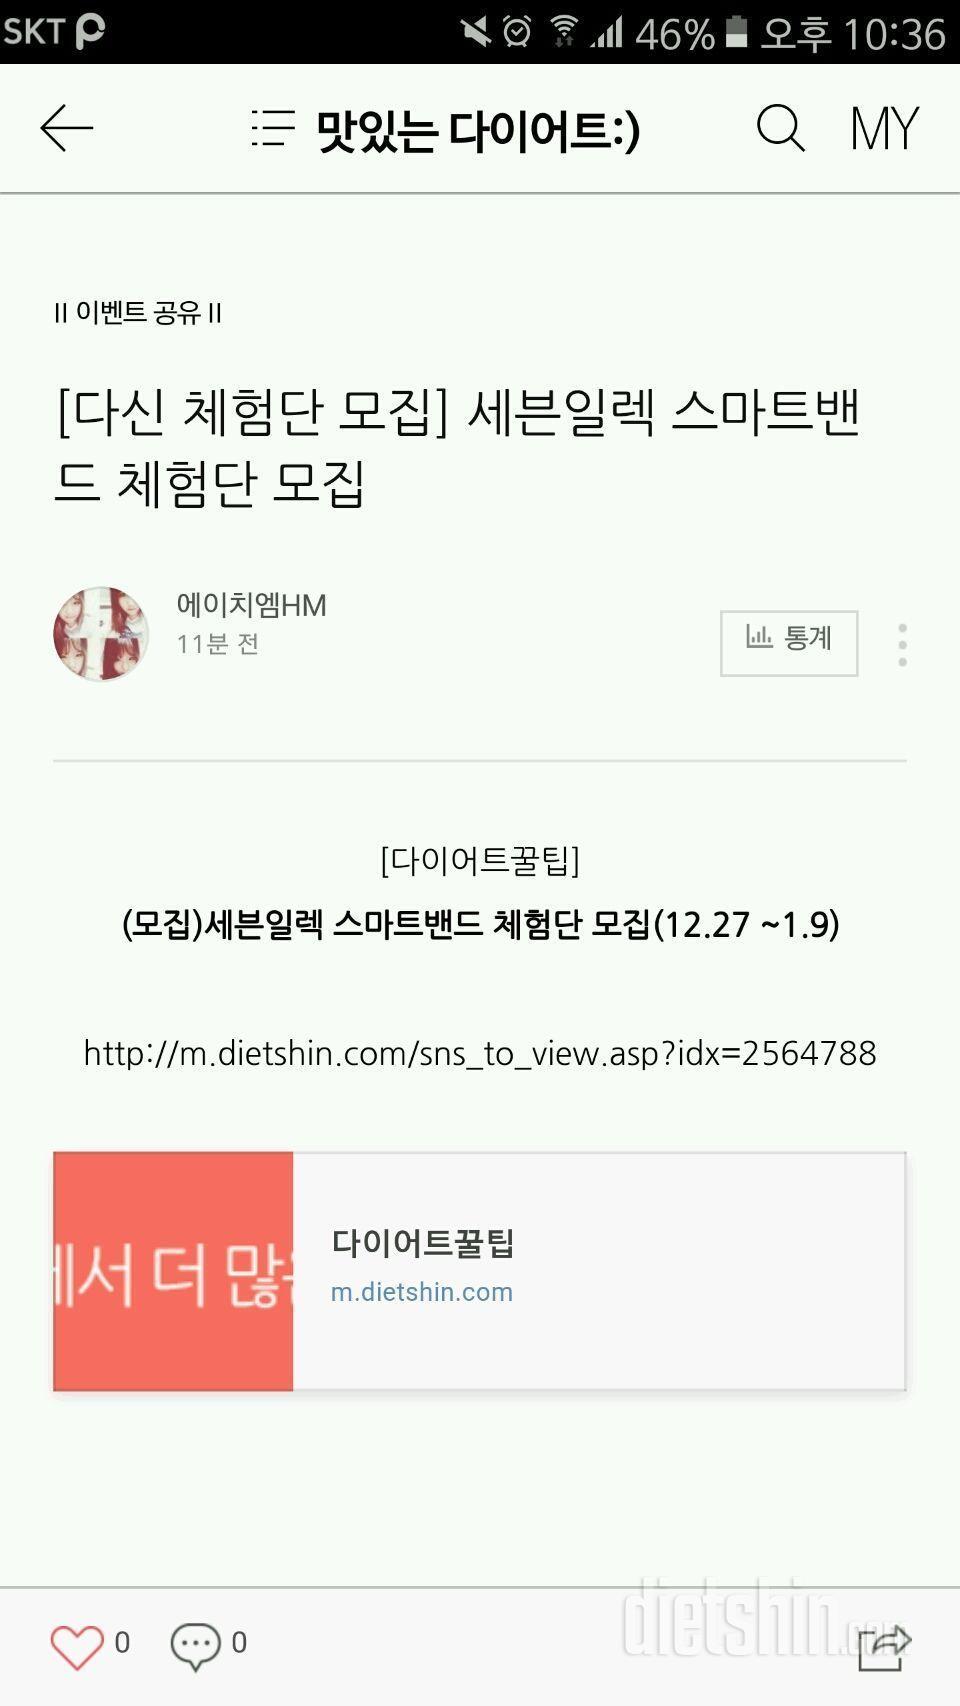 <세븐일렉 스마트밴드 체험단 신청>100일간 단 하루도!!